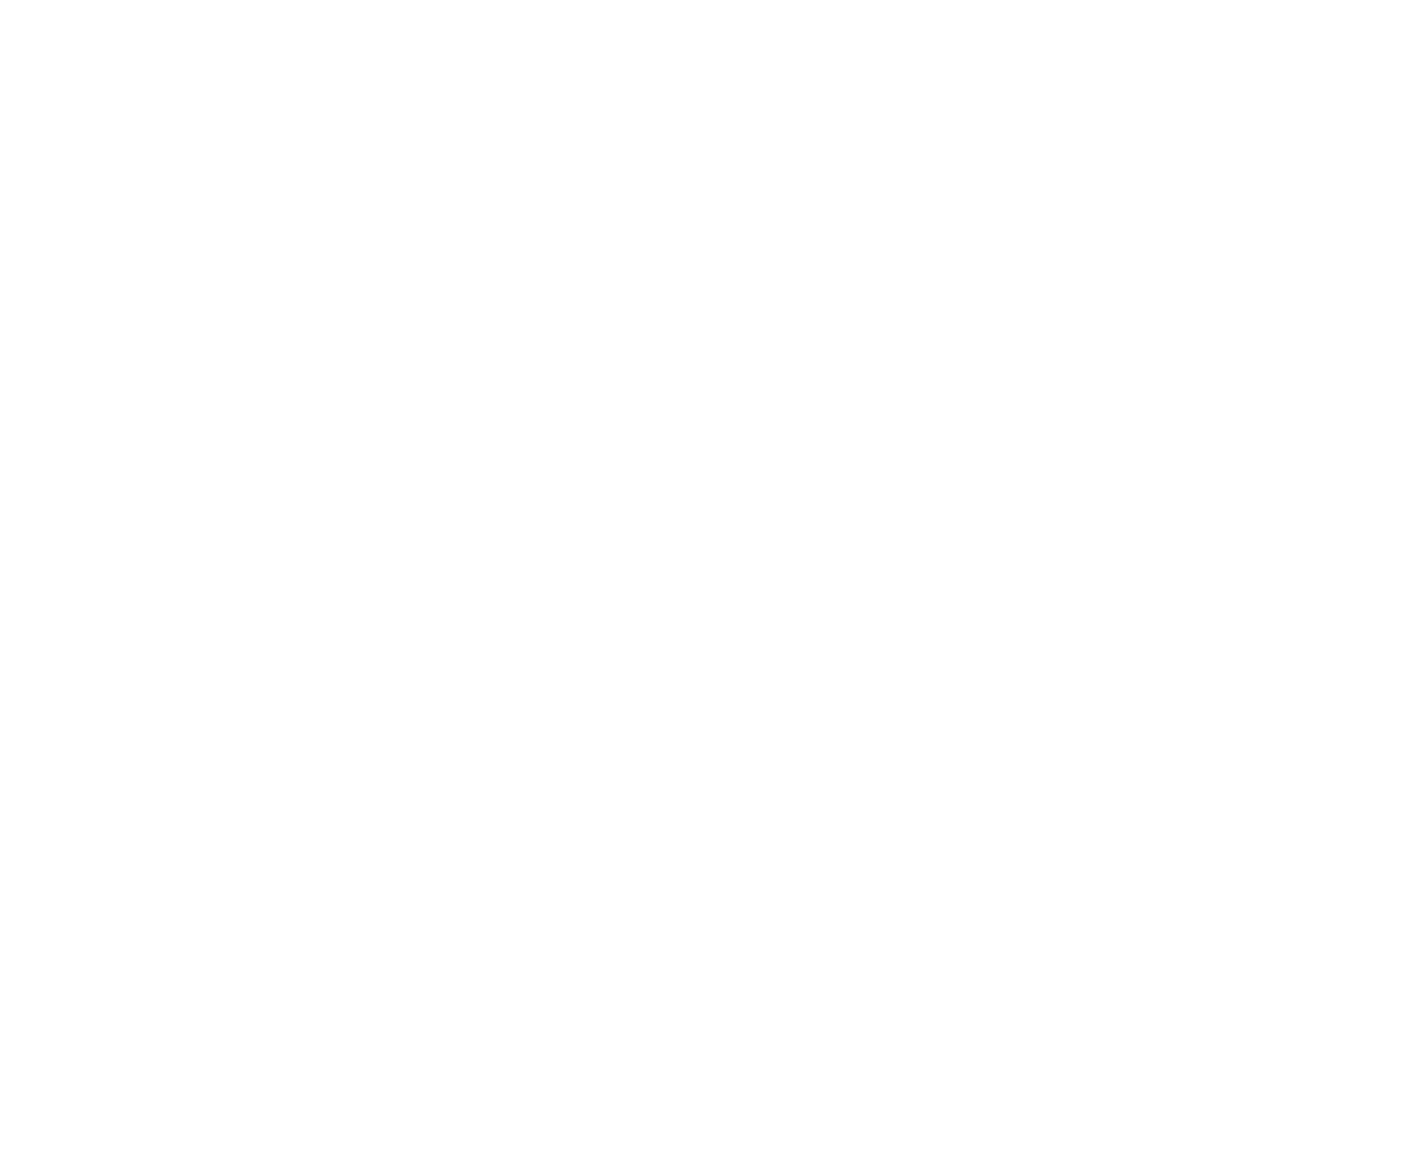 Airtable logo pour fonds sombres (PNG transparent)